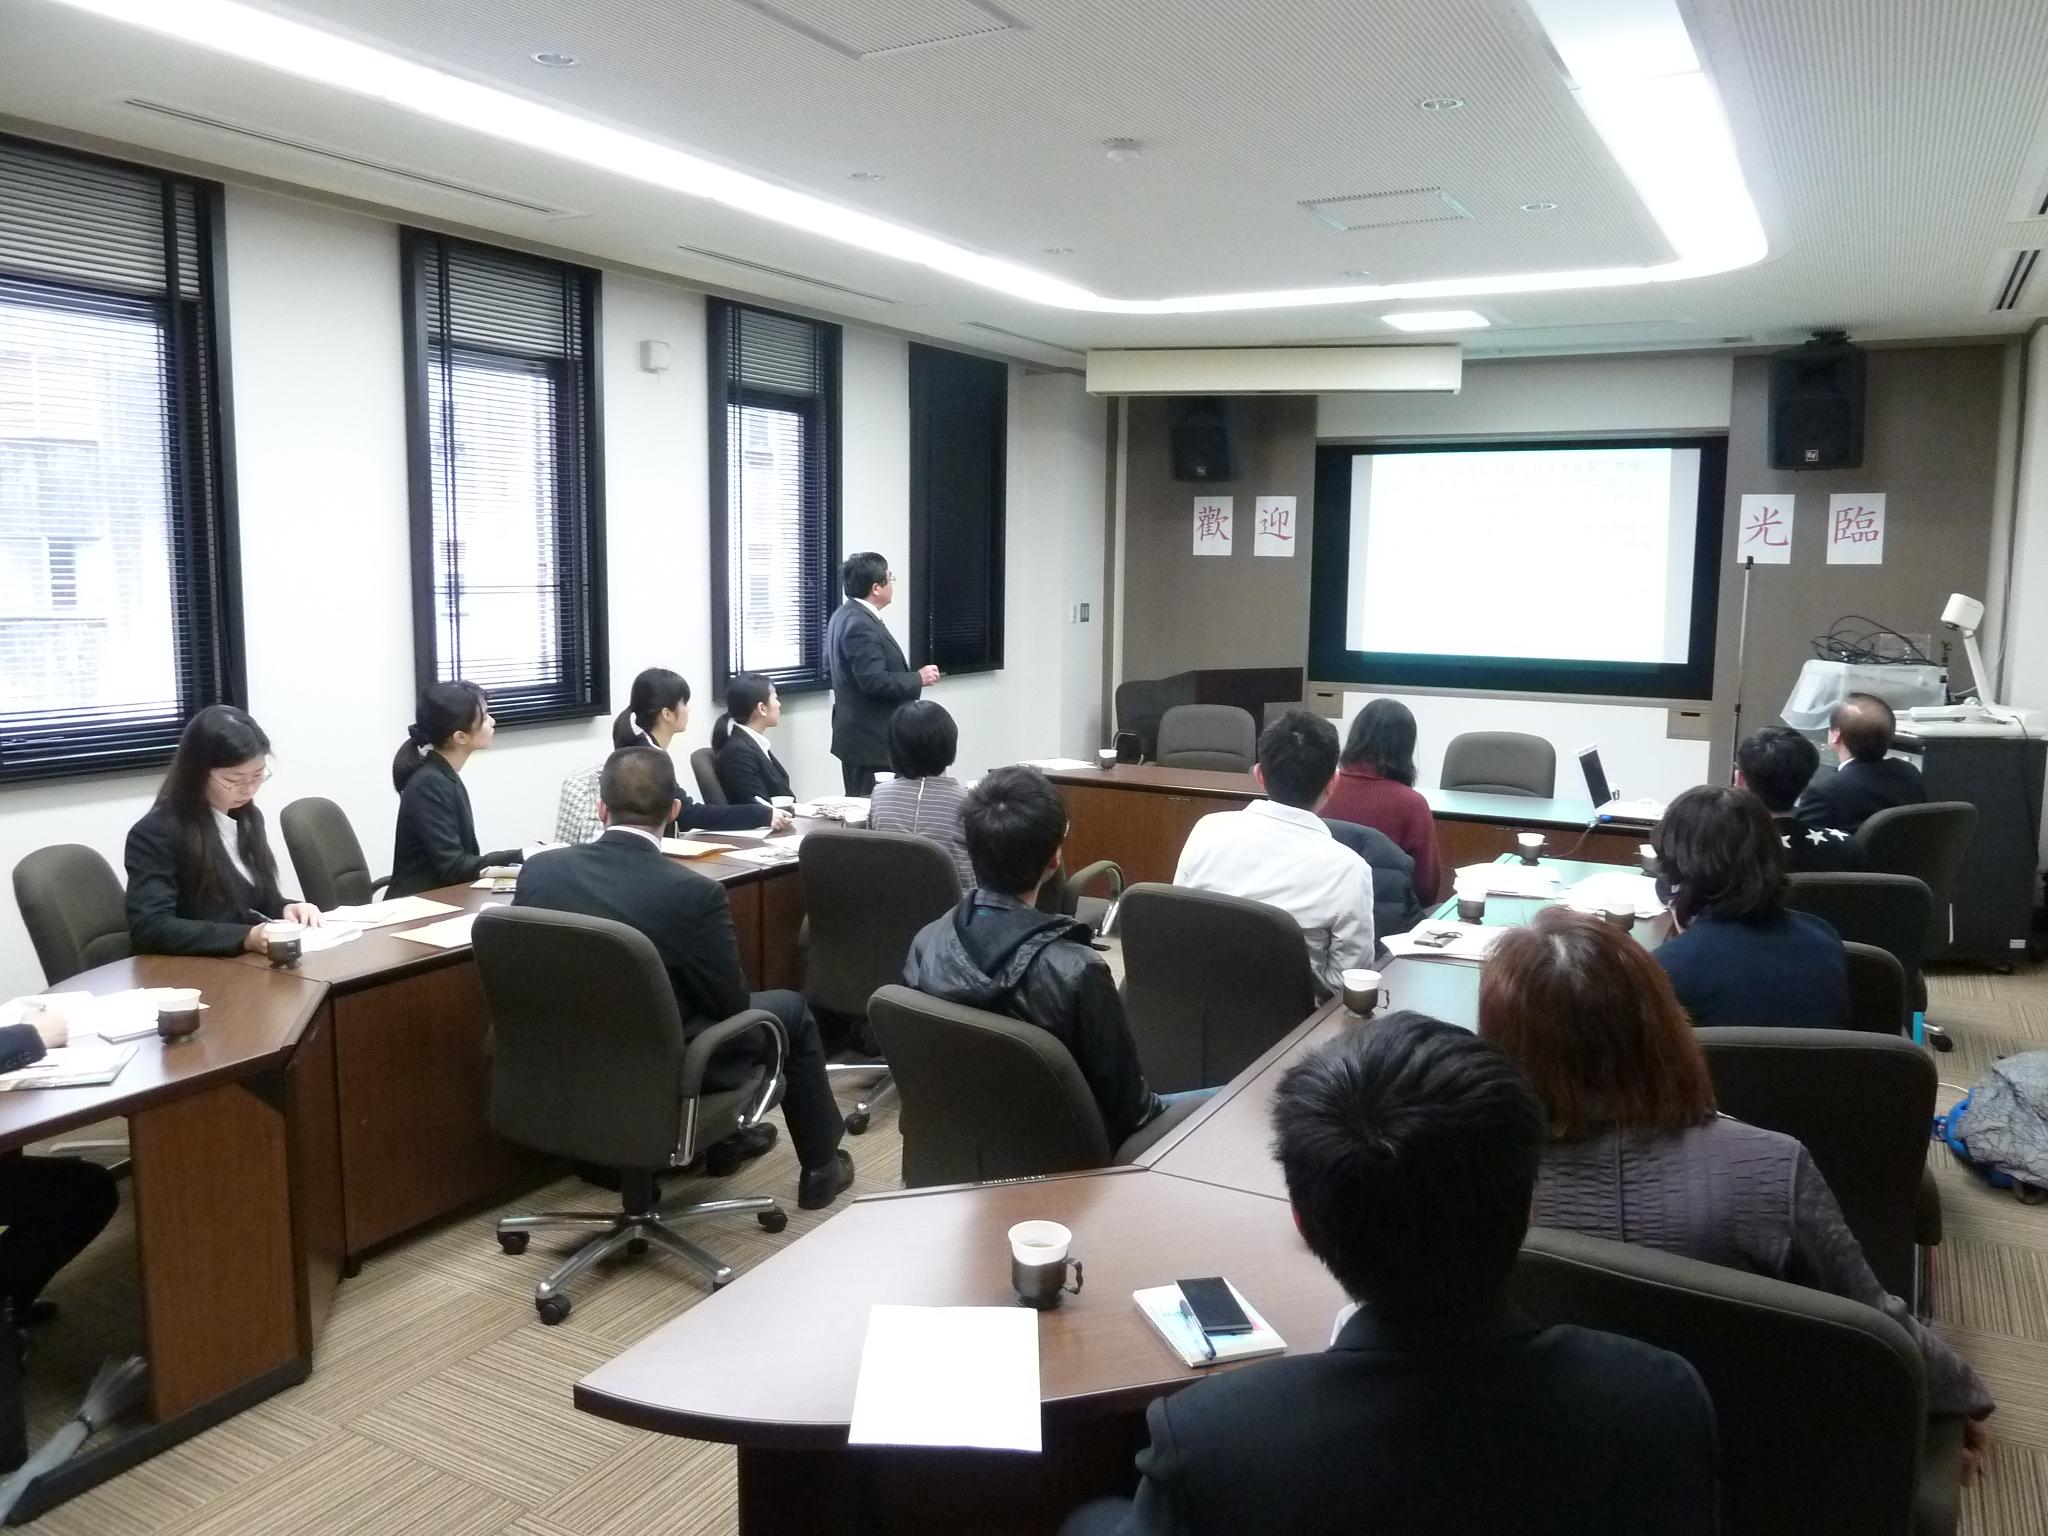 3/9本處邀請日本籍大學生、台灣留學生參加戎總領事演講會，戎總領事以「台灣人所尊敬的日本精神」為題發表演講。